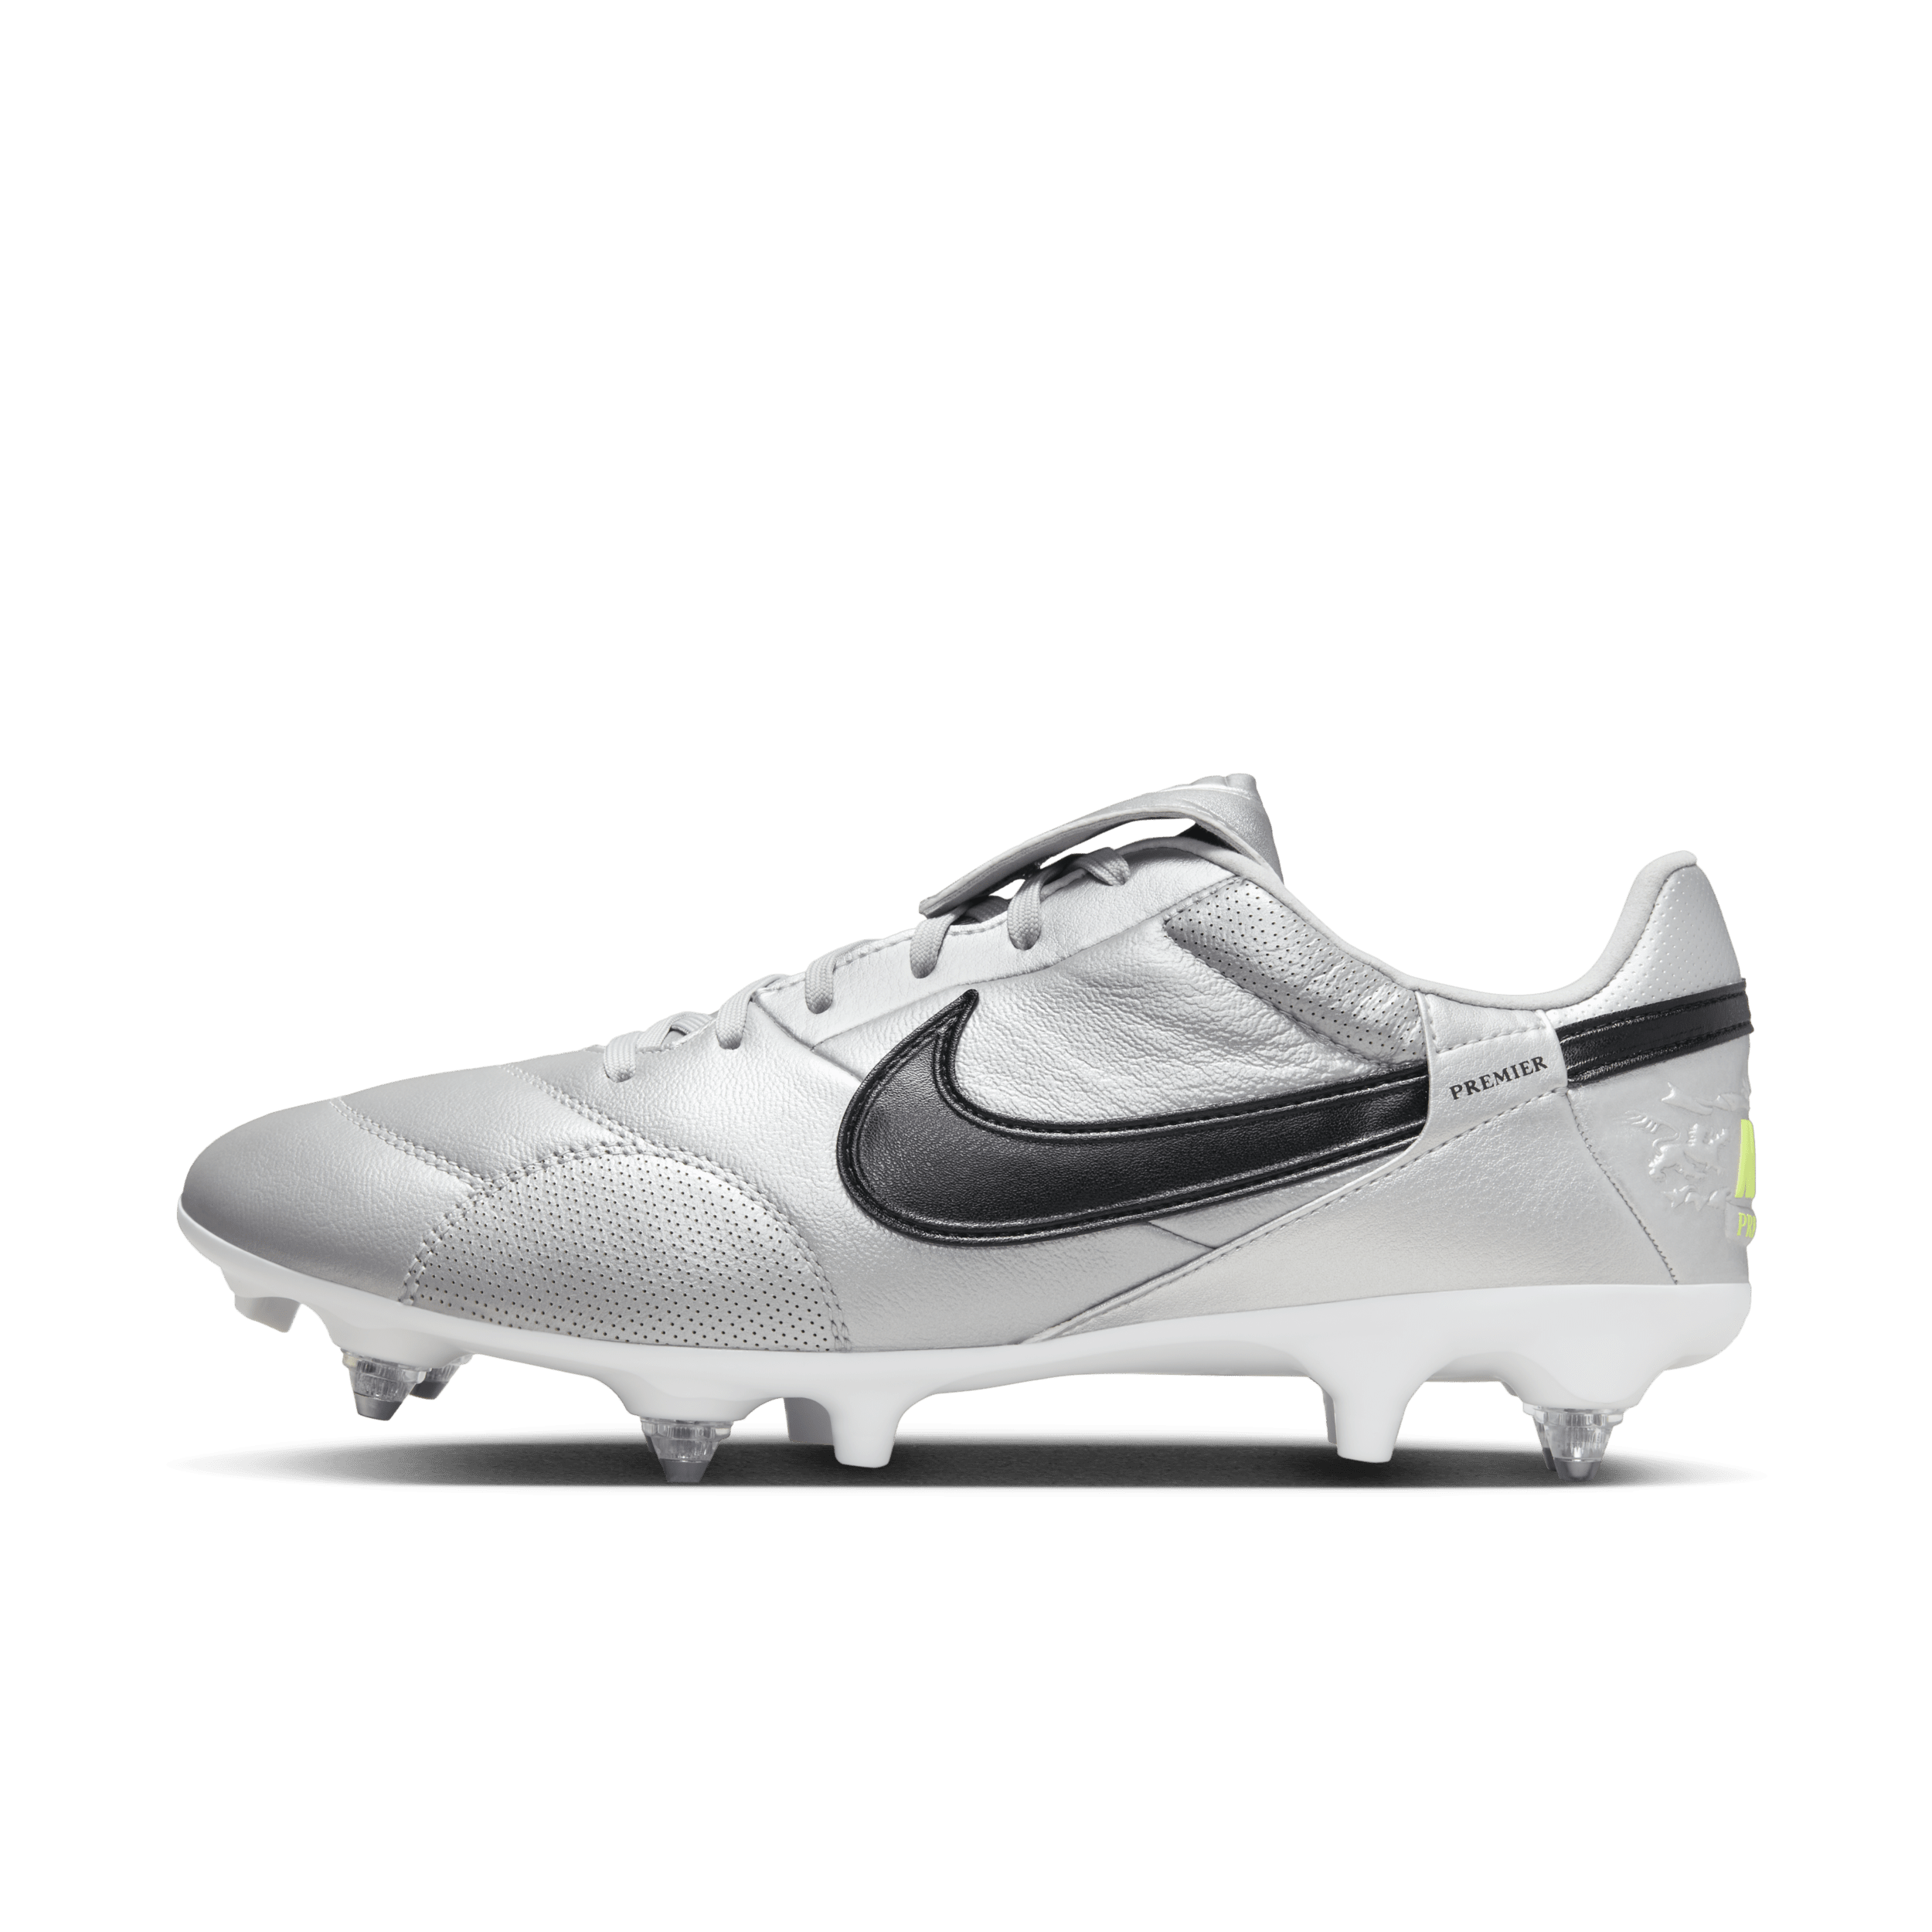 NikePremier 3 low top voetbalschoenen (zachte ondergrond) - Grijs